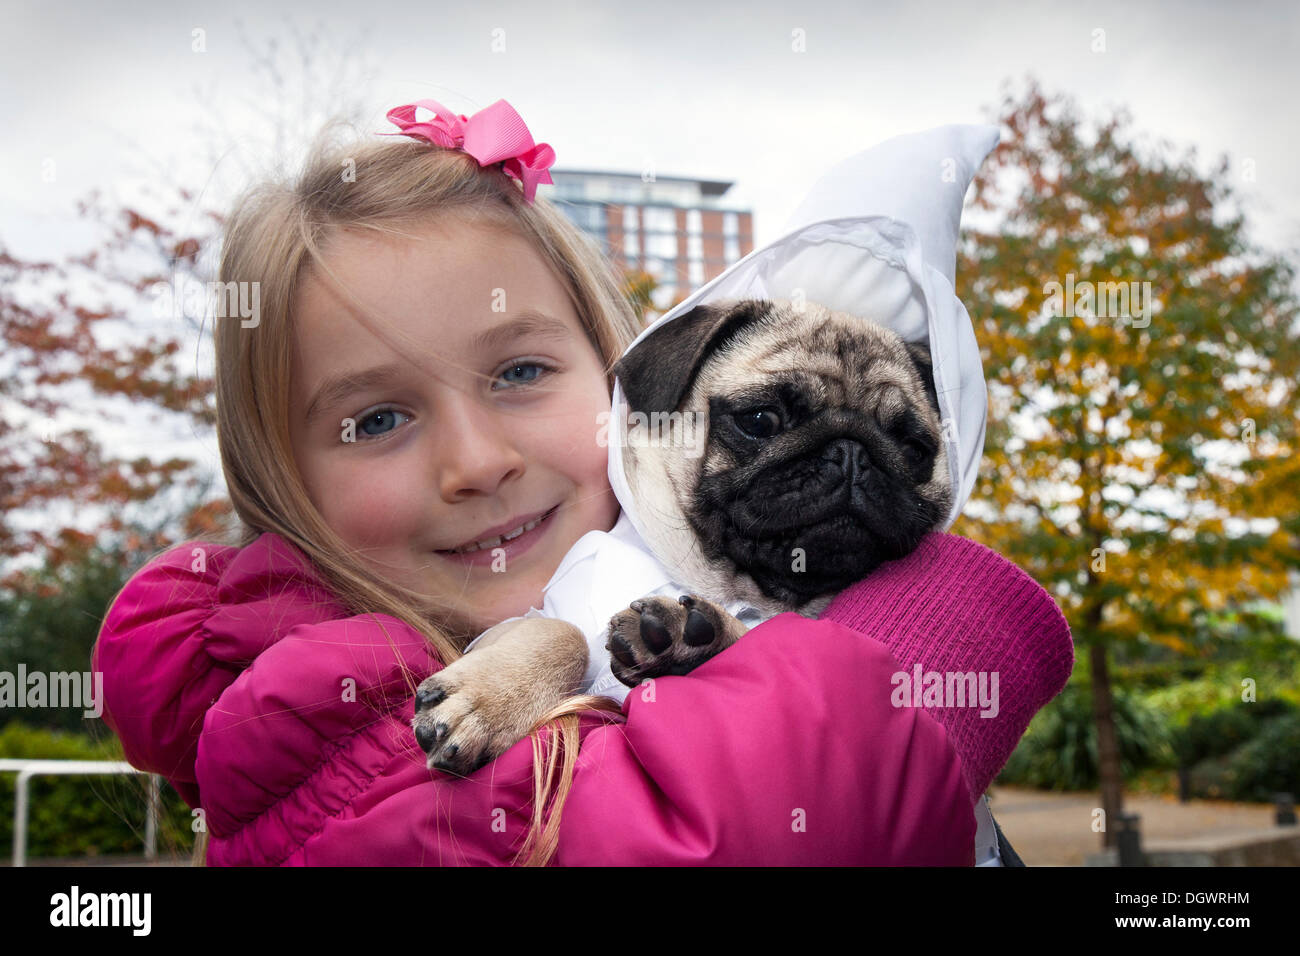 Manchester, Großbritannien, 26. Oktober, 2013. Libby McCoy, 7 Jahre alt aus Chorley, mit ihrem Mops in Kostüm, an den Kais, Trafford Park, Manchester offen Wochenende. Stockfoto